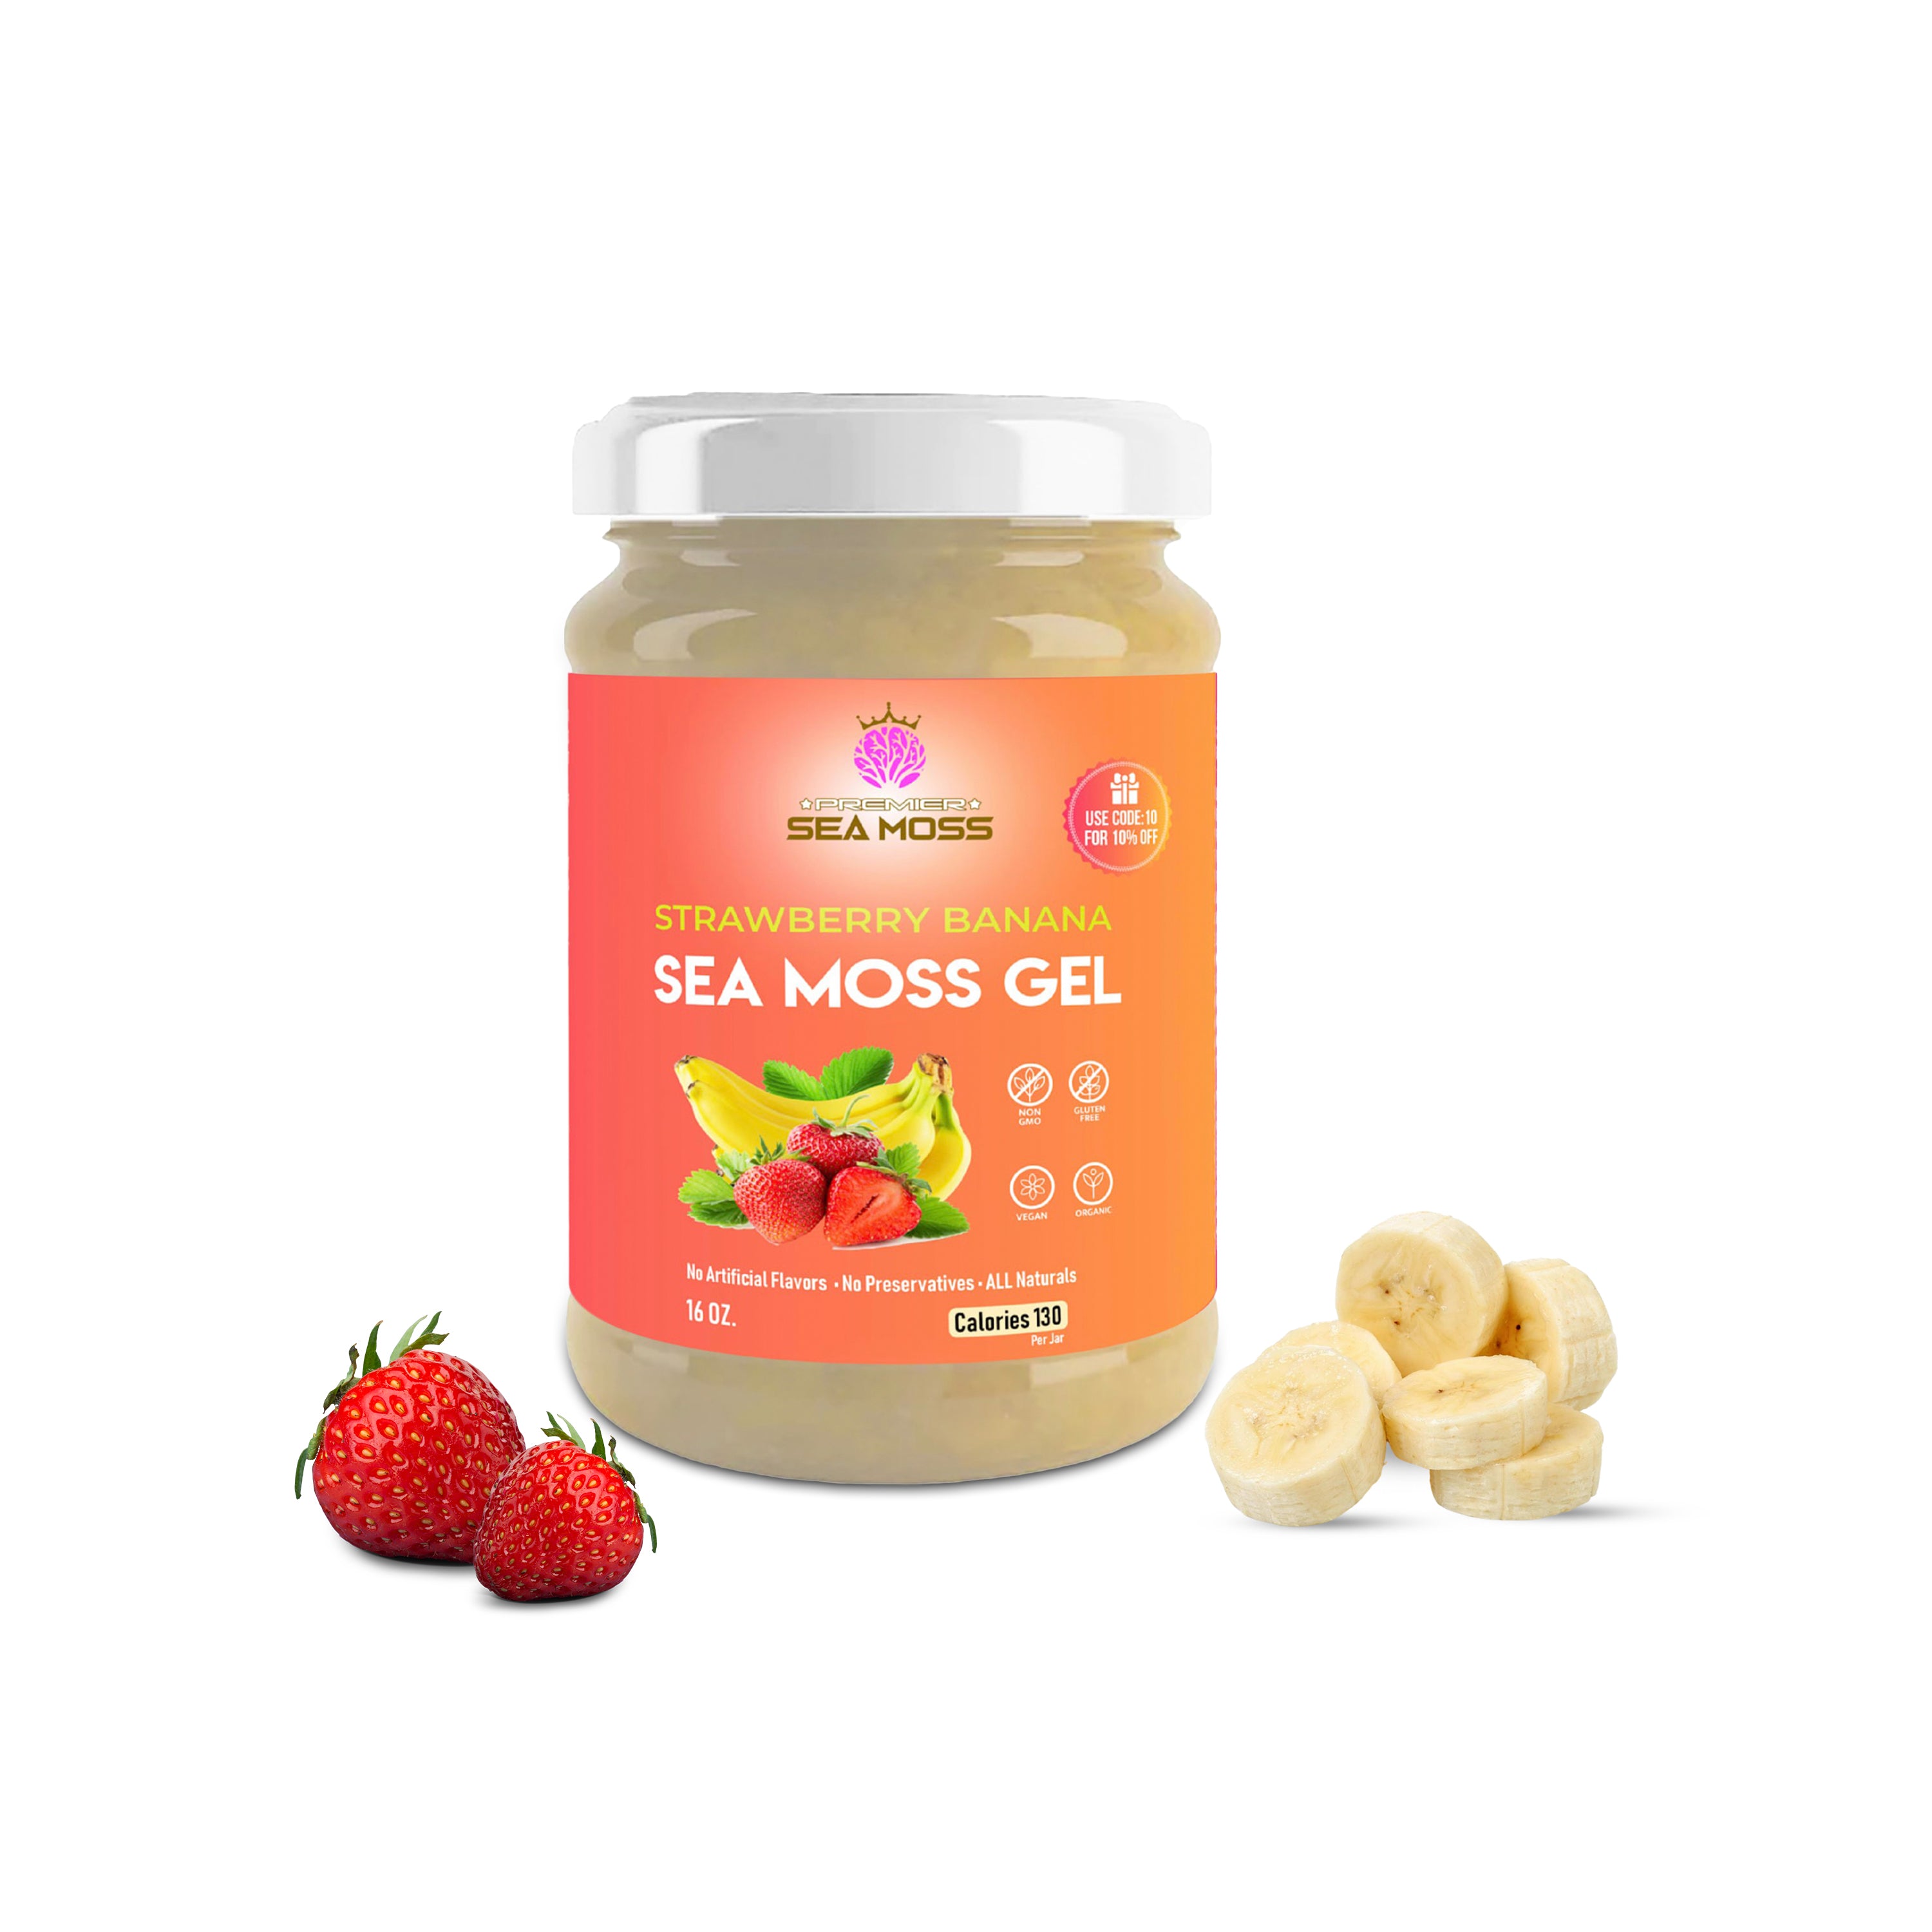 Flavored Sea Moss Gel